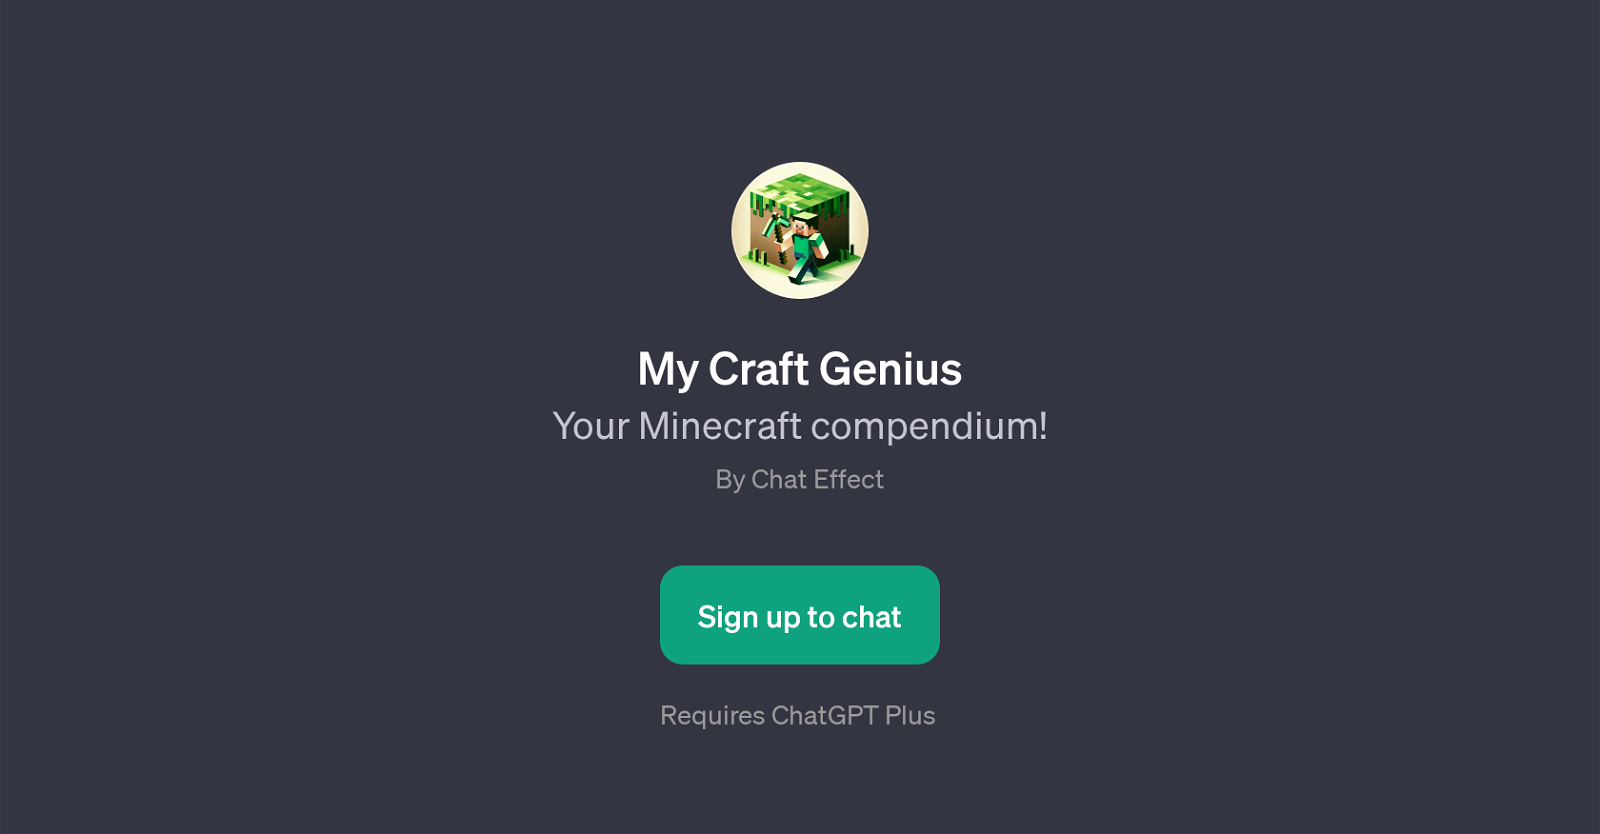 My Craft Genius website